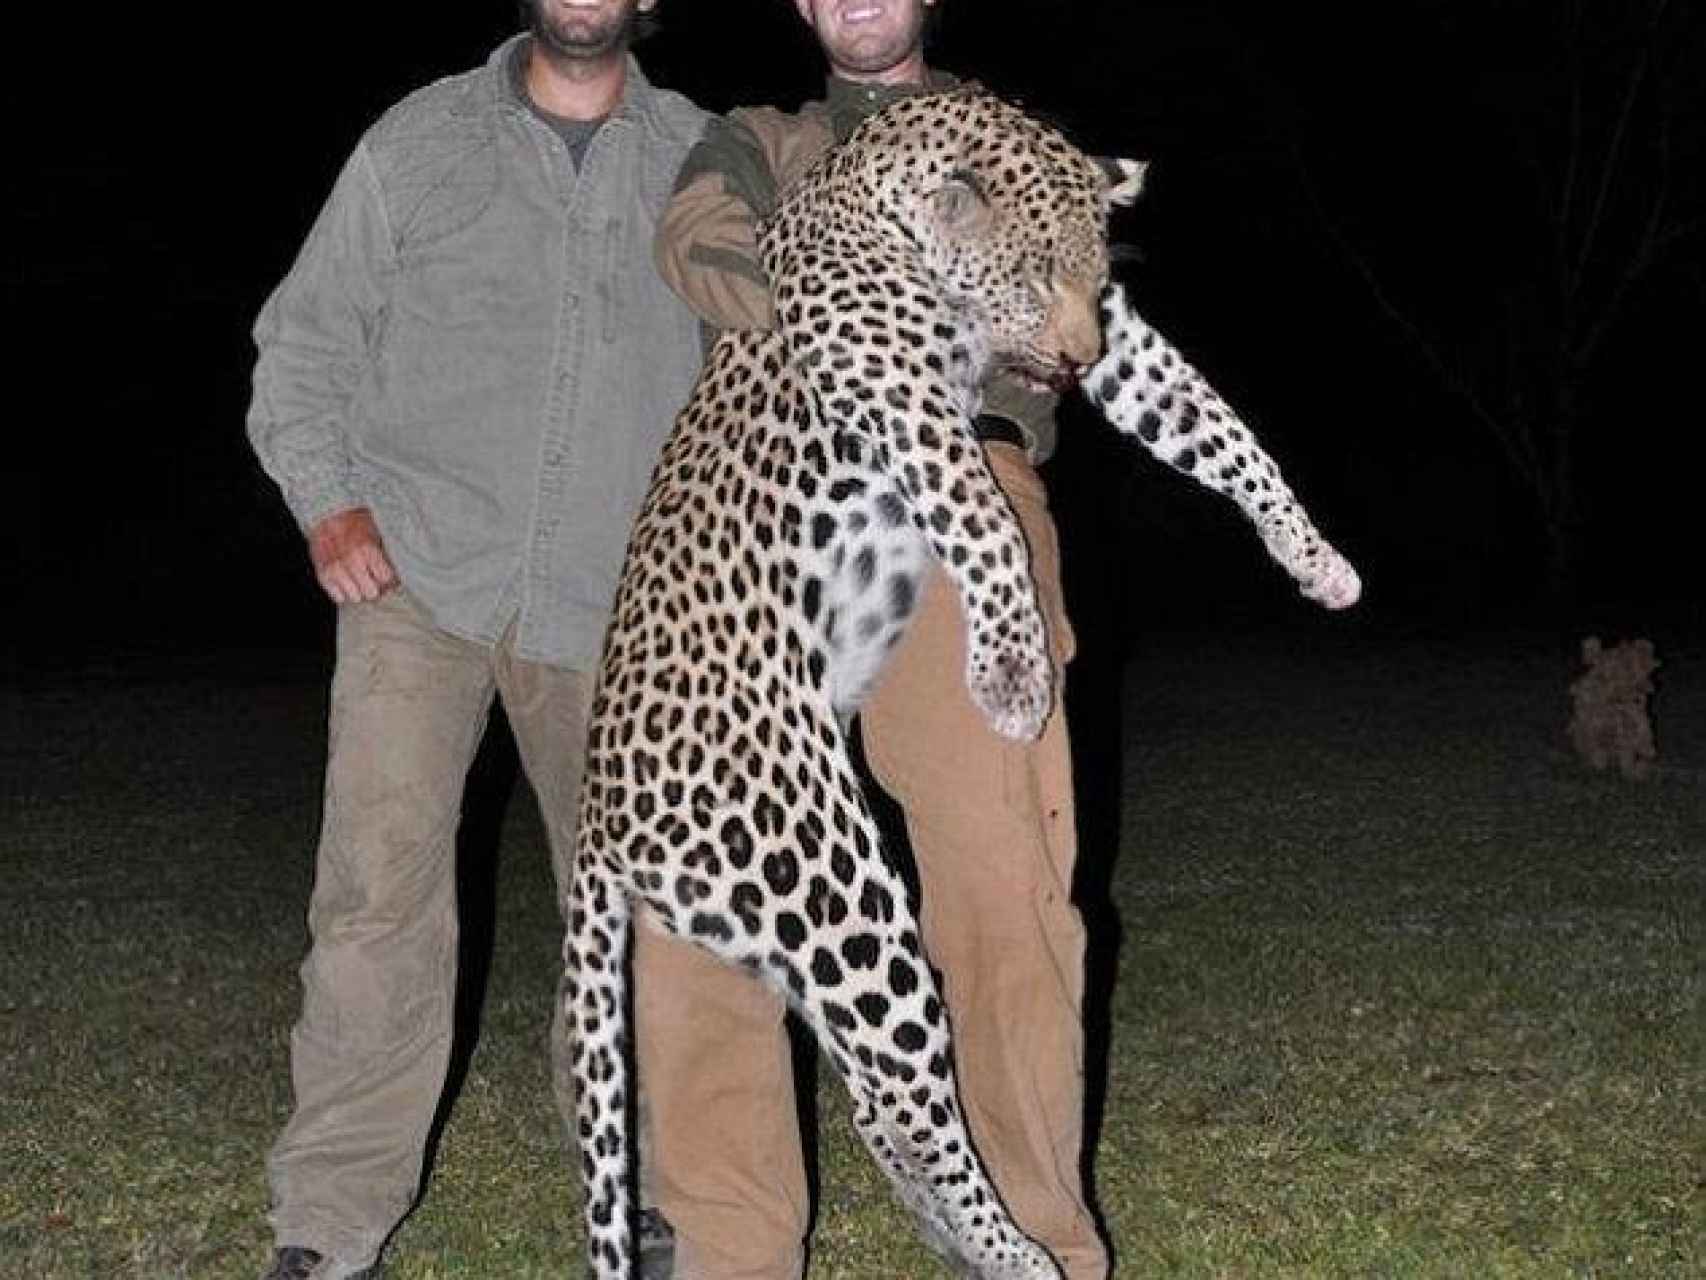 Los hermanos Eric y Donald Trump Jr. son grandes amantes de la caza.